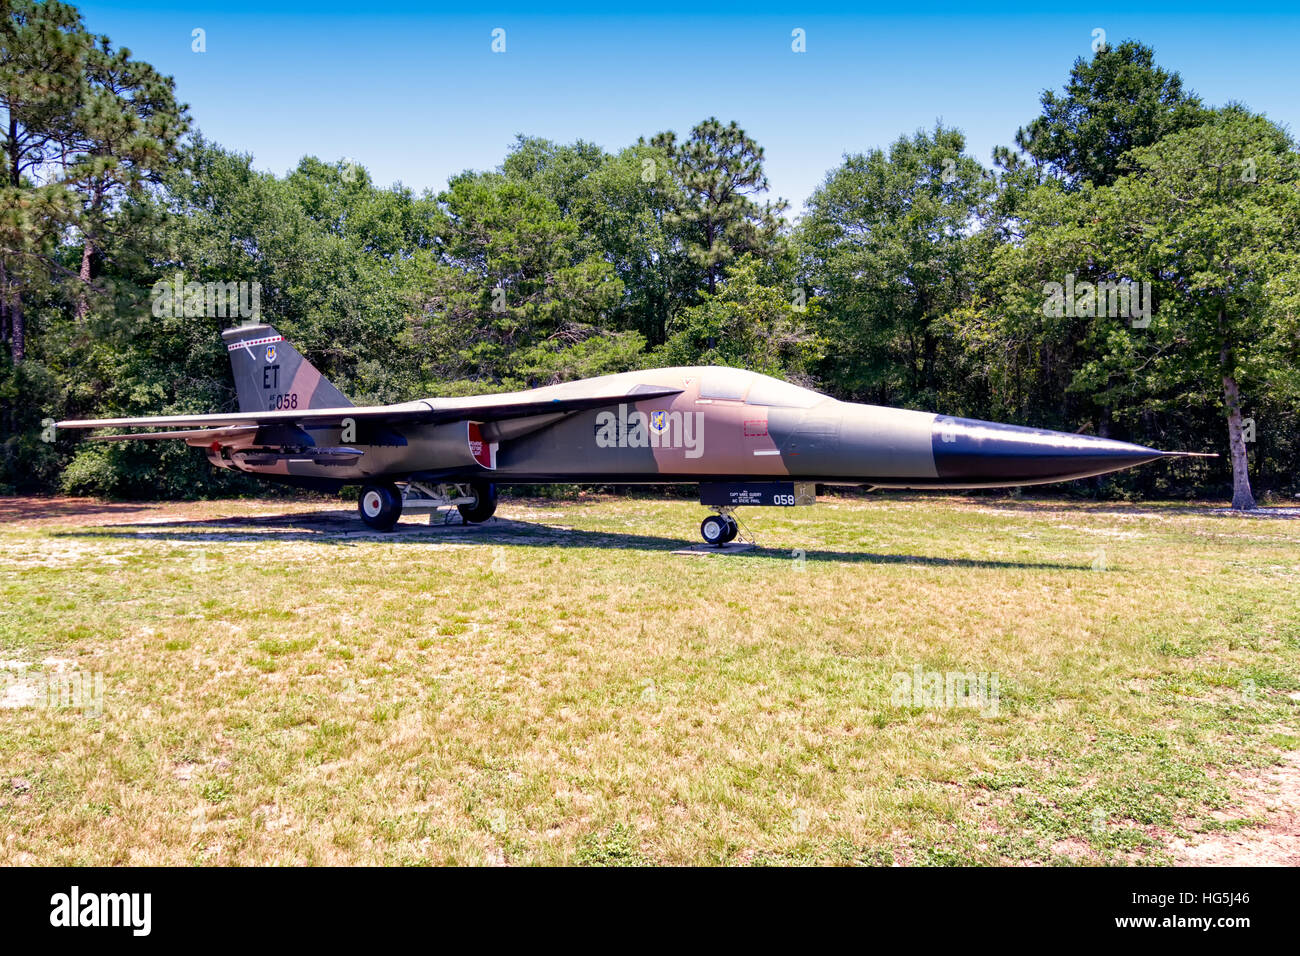 General Dynamics F-111E-CF, 68-0058, dernier affecté à la 40e Escadron d'essais en vol, Eglin AFB, en Floride. Banque D'Images